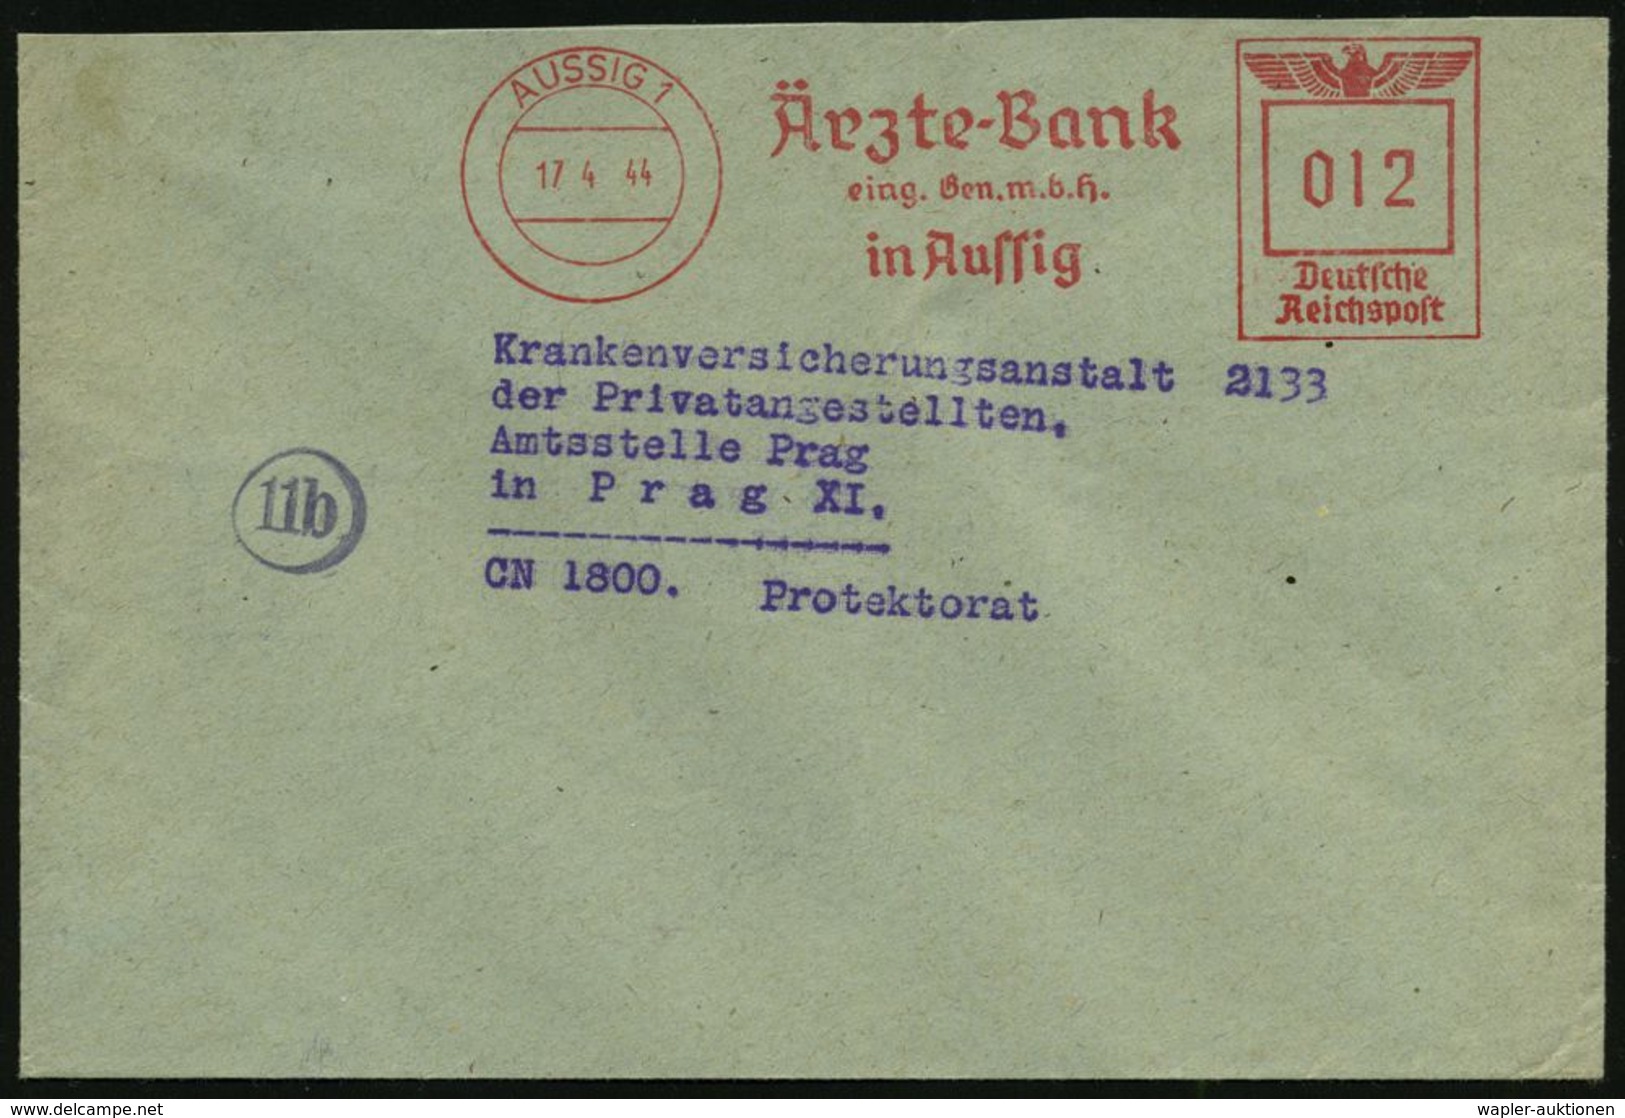 MEDIZIN / GESUNDHEITSWESEN : AUSSIG 1/ Ärzte-Bank/ Eing.Gen.m.b.H. 1944 (17.4.) AFS 012 Pf. Inl.-Tarif N. Prag (Böhmen & - Medicine